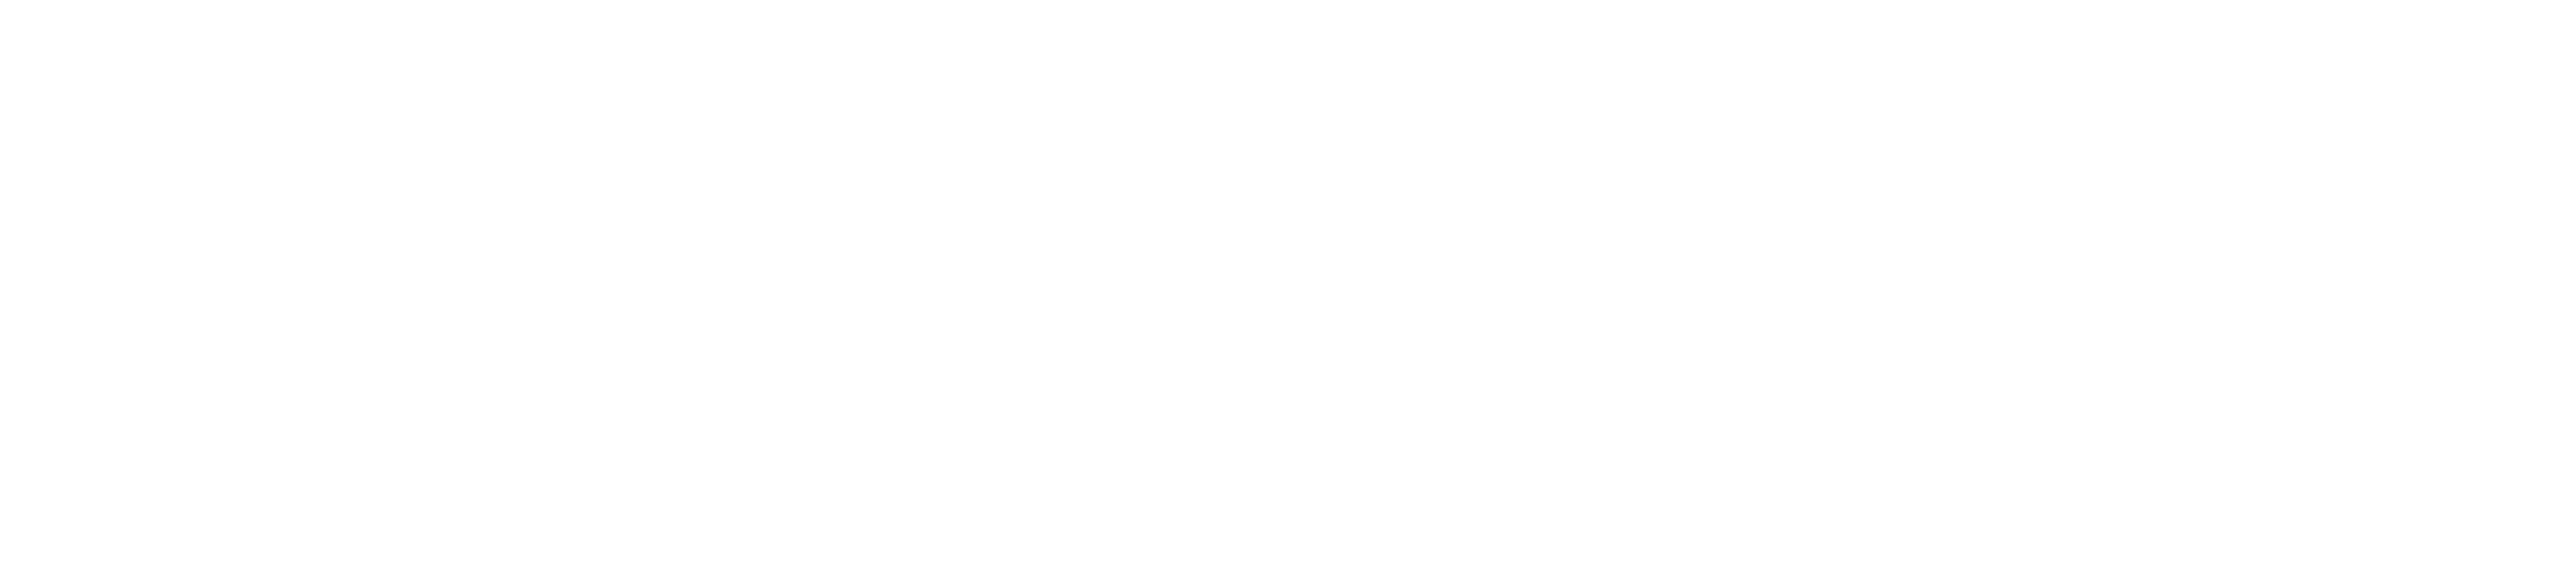 Fundación Pública Andaluza El legado andalusí